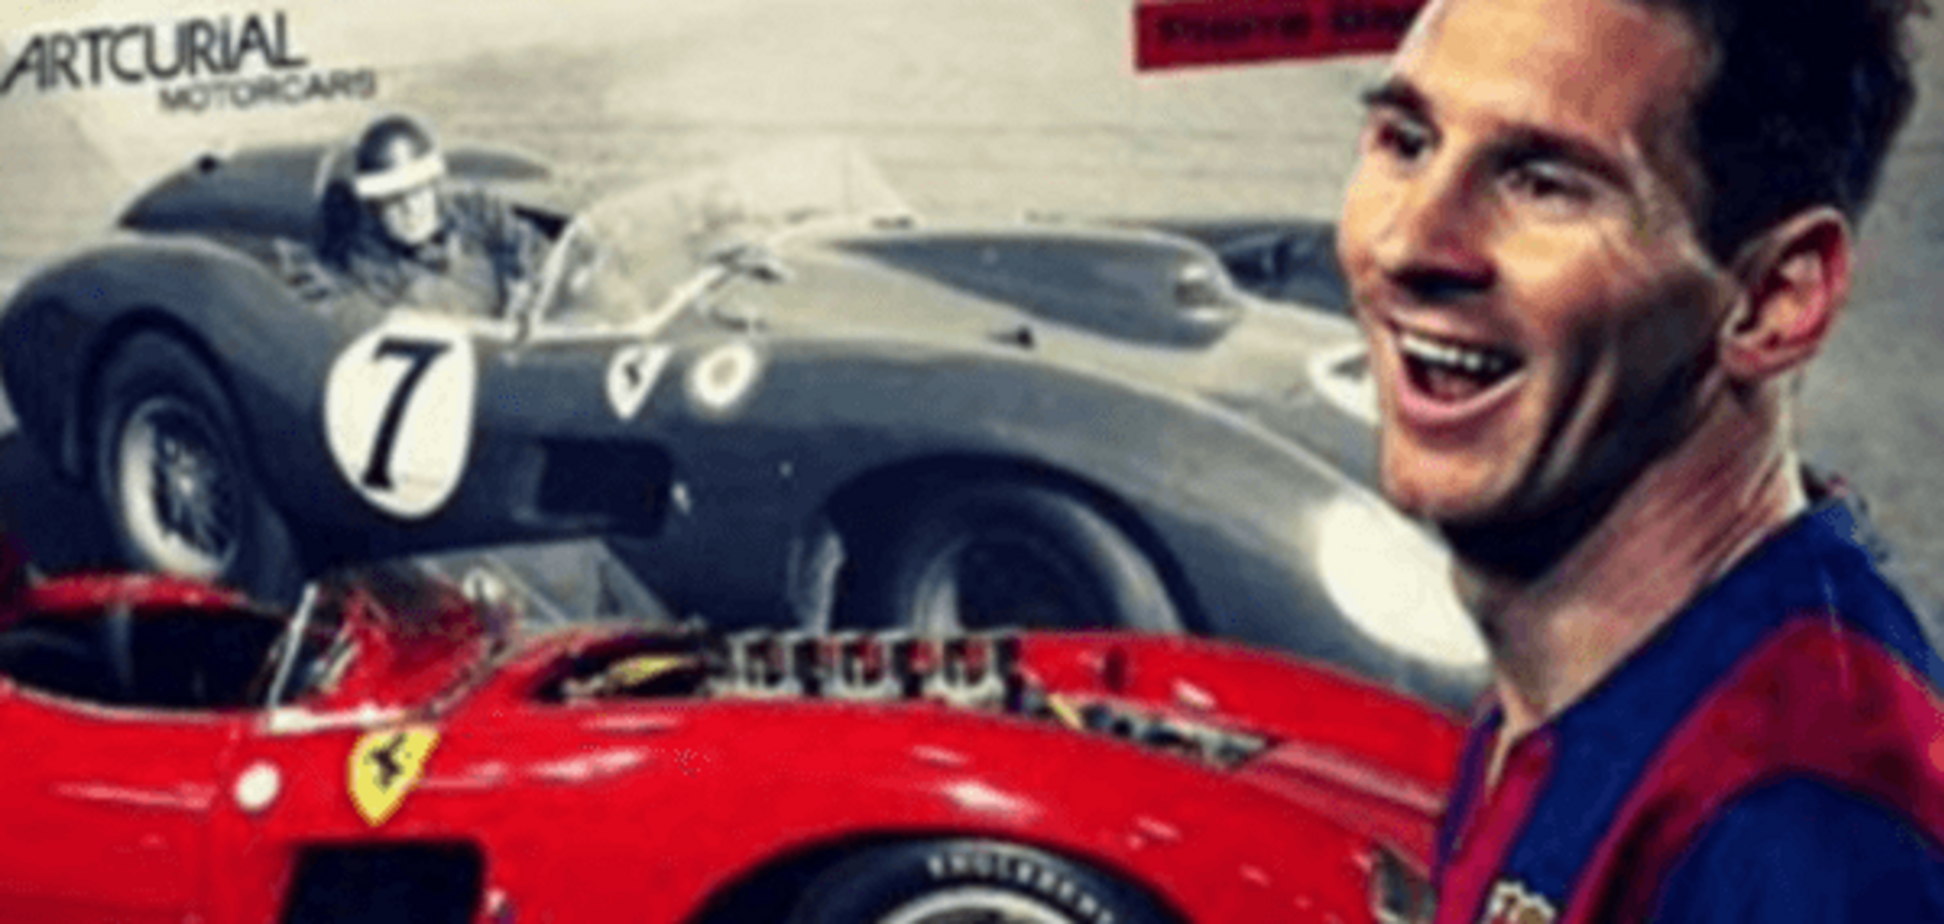 Месси 'лишил' Роналду самого дорогого авто в мире: фото спорткара